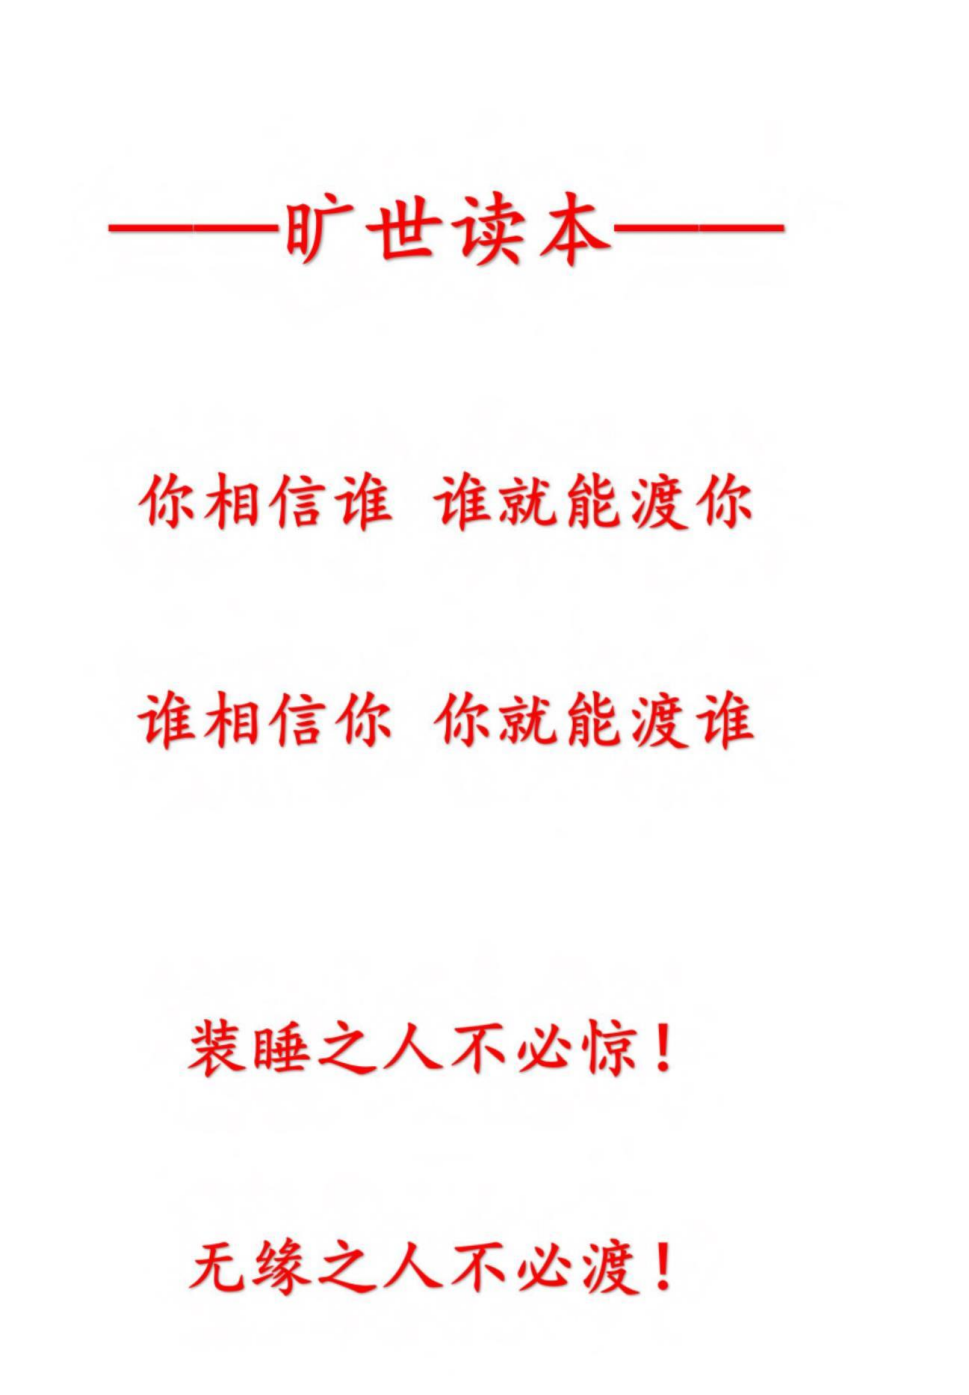 《红尘破局之天成》[无水印]「百度网盘下载」PDF 电子书插图2